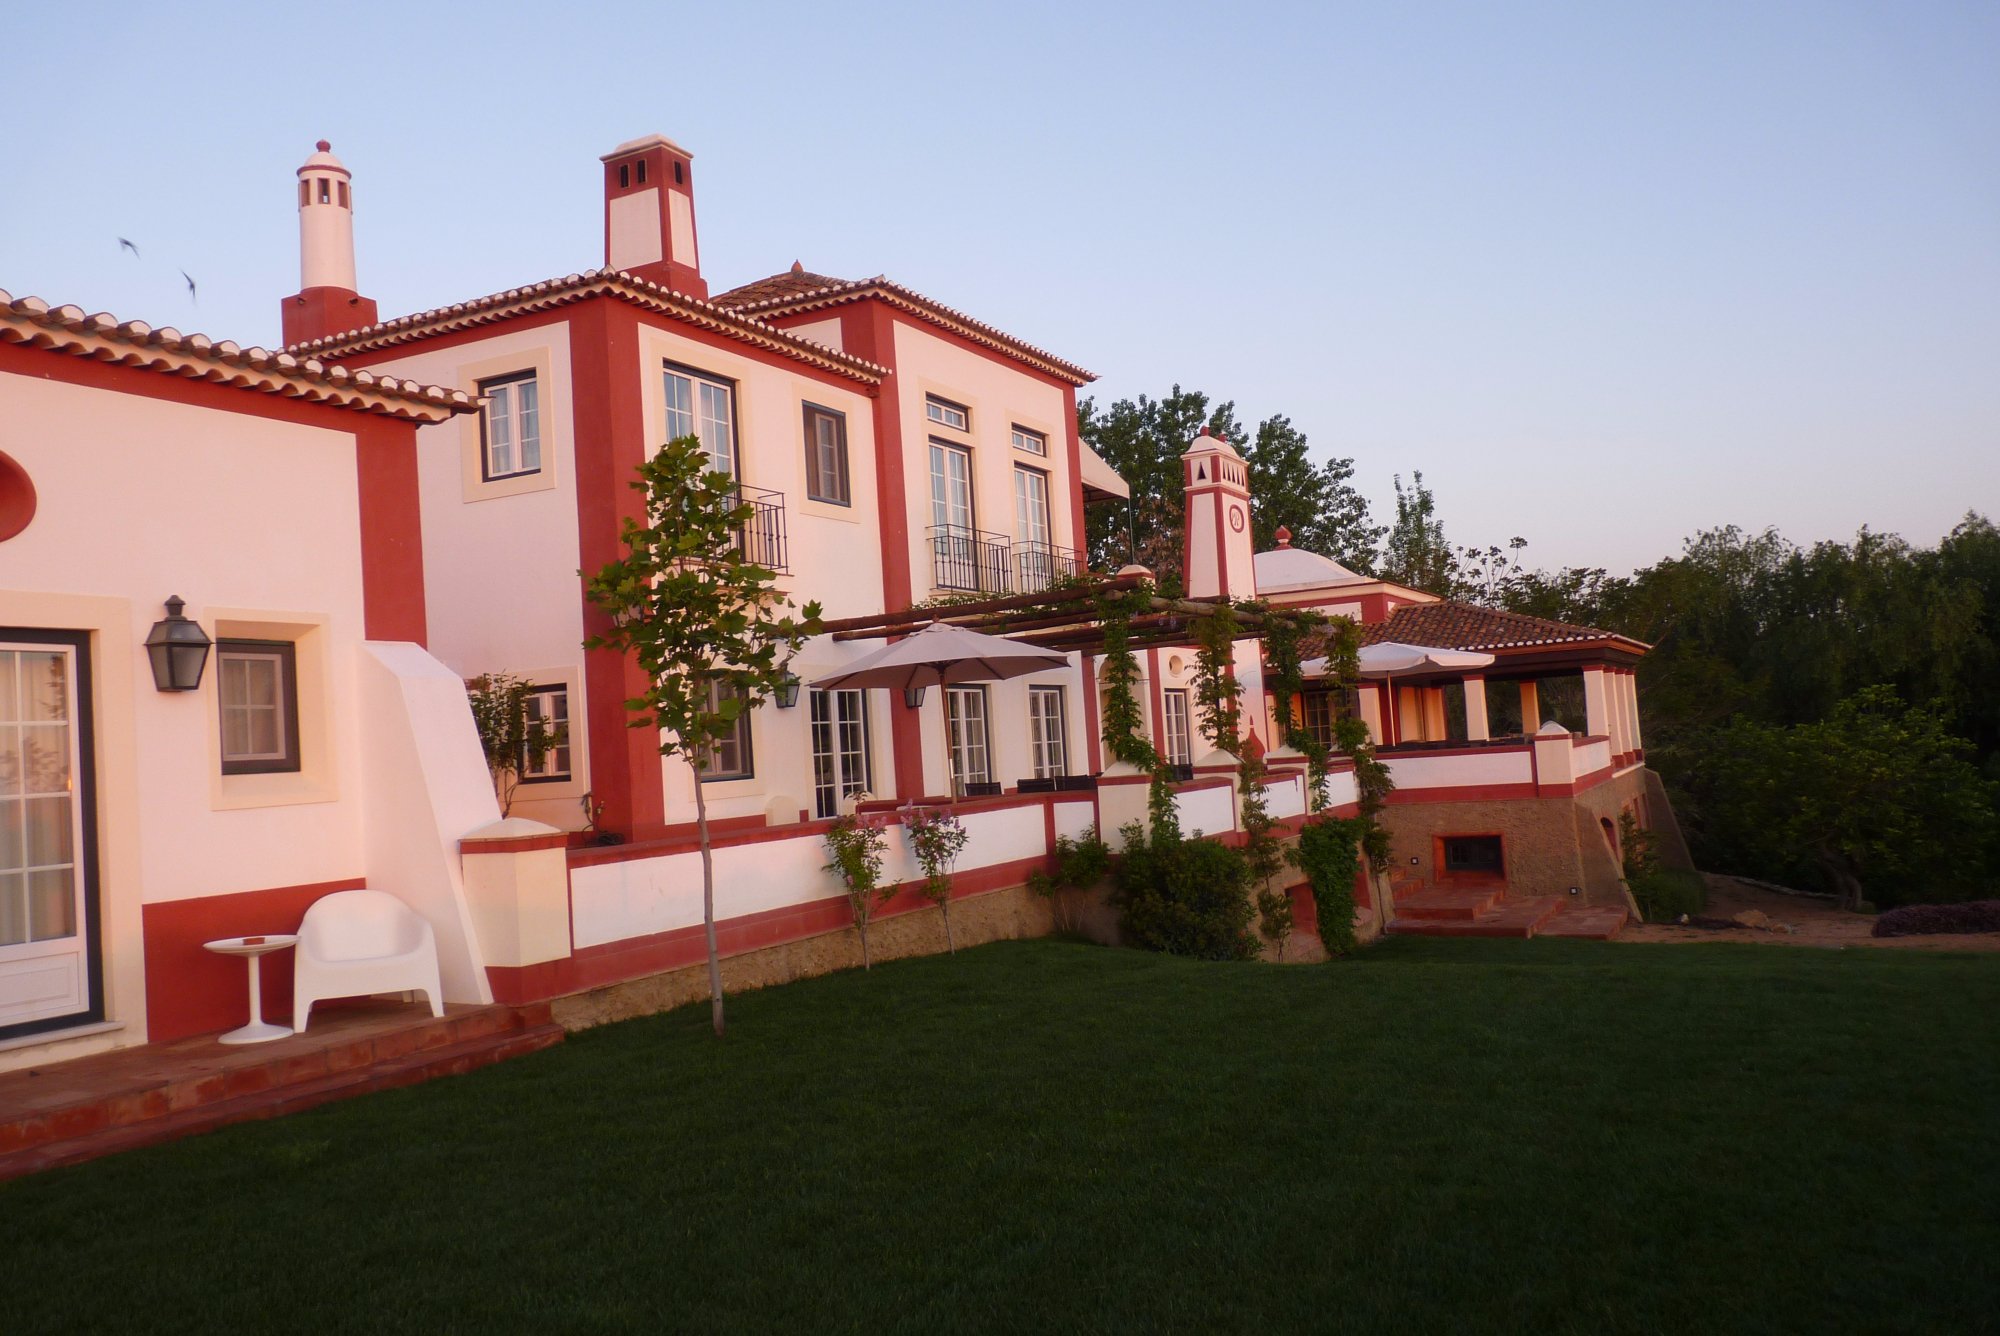 Monte da Provença Rural Hotel in Alentejo Portugal